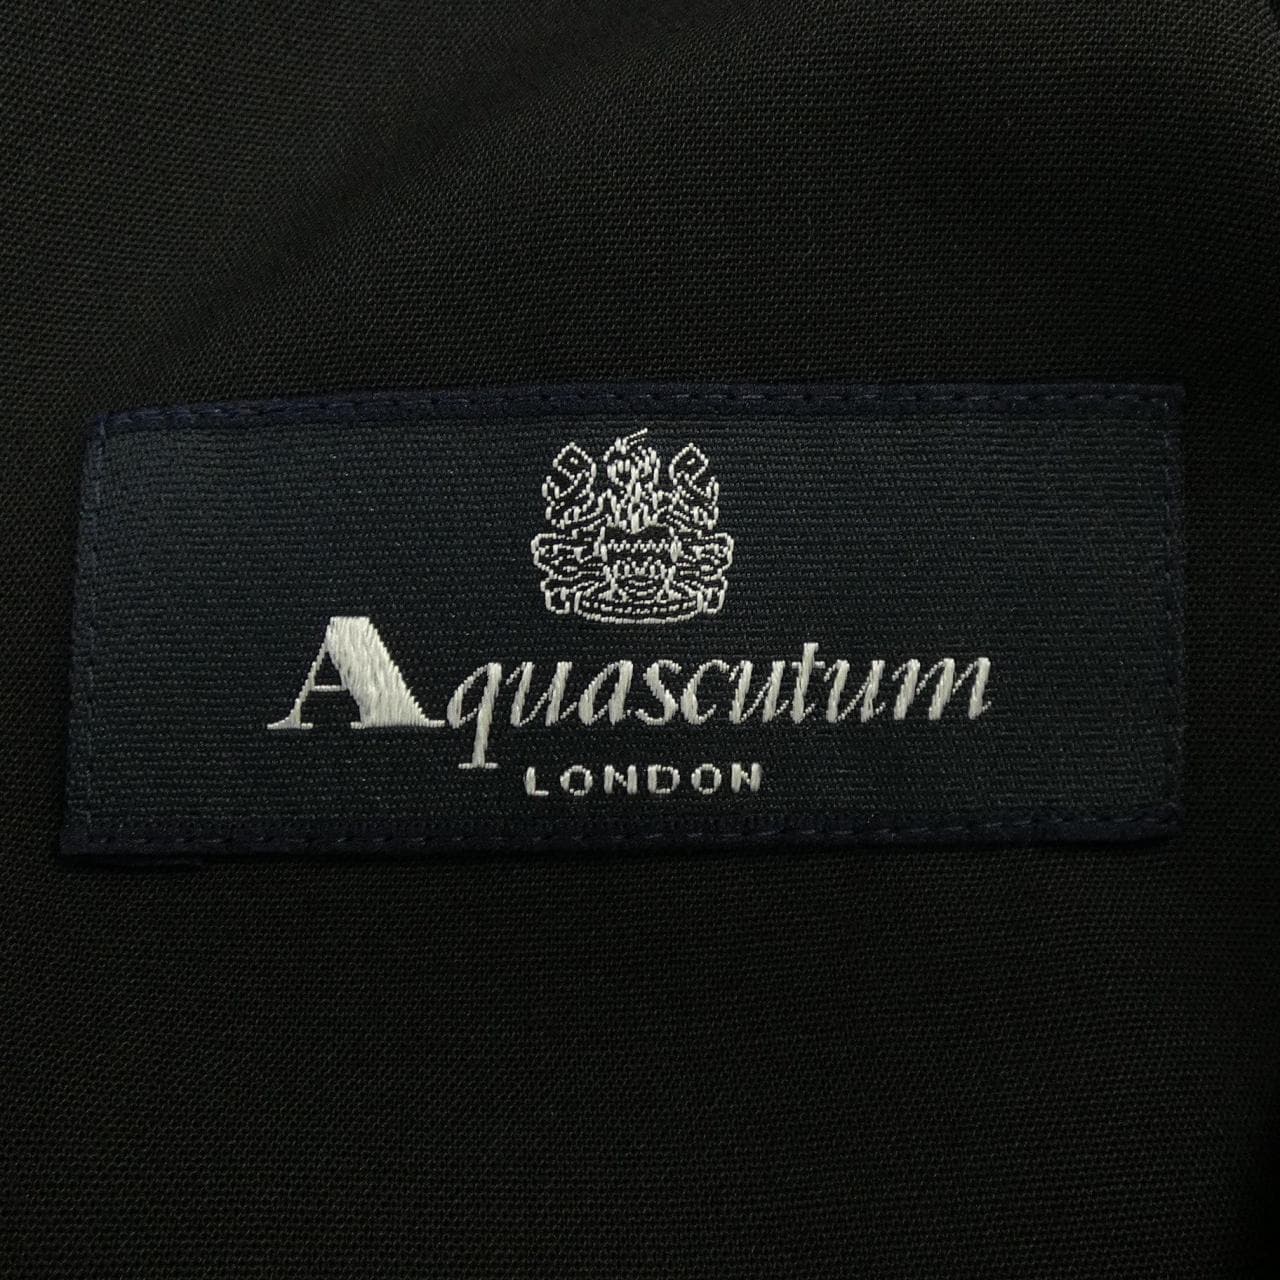 アクアスキュータム Aquascutum スーツ